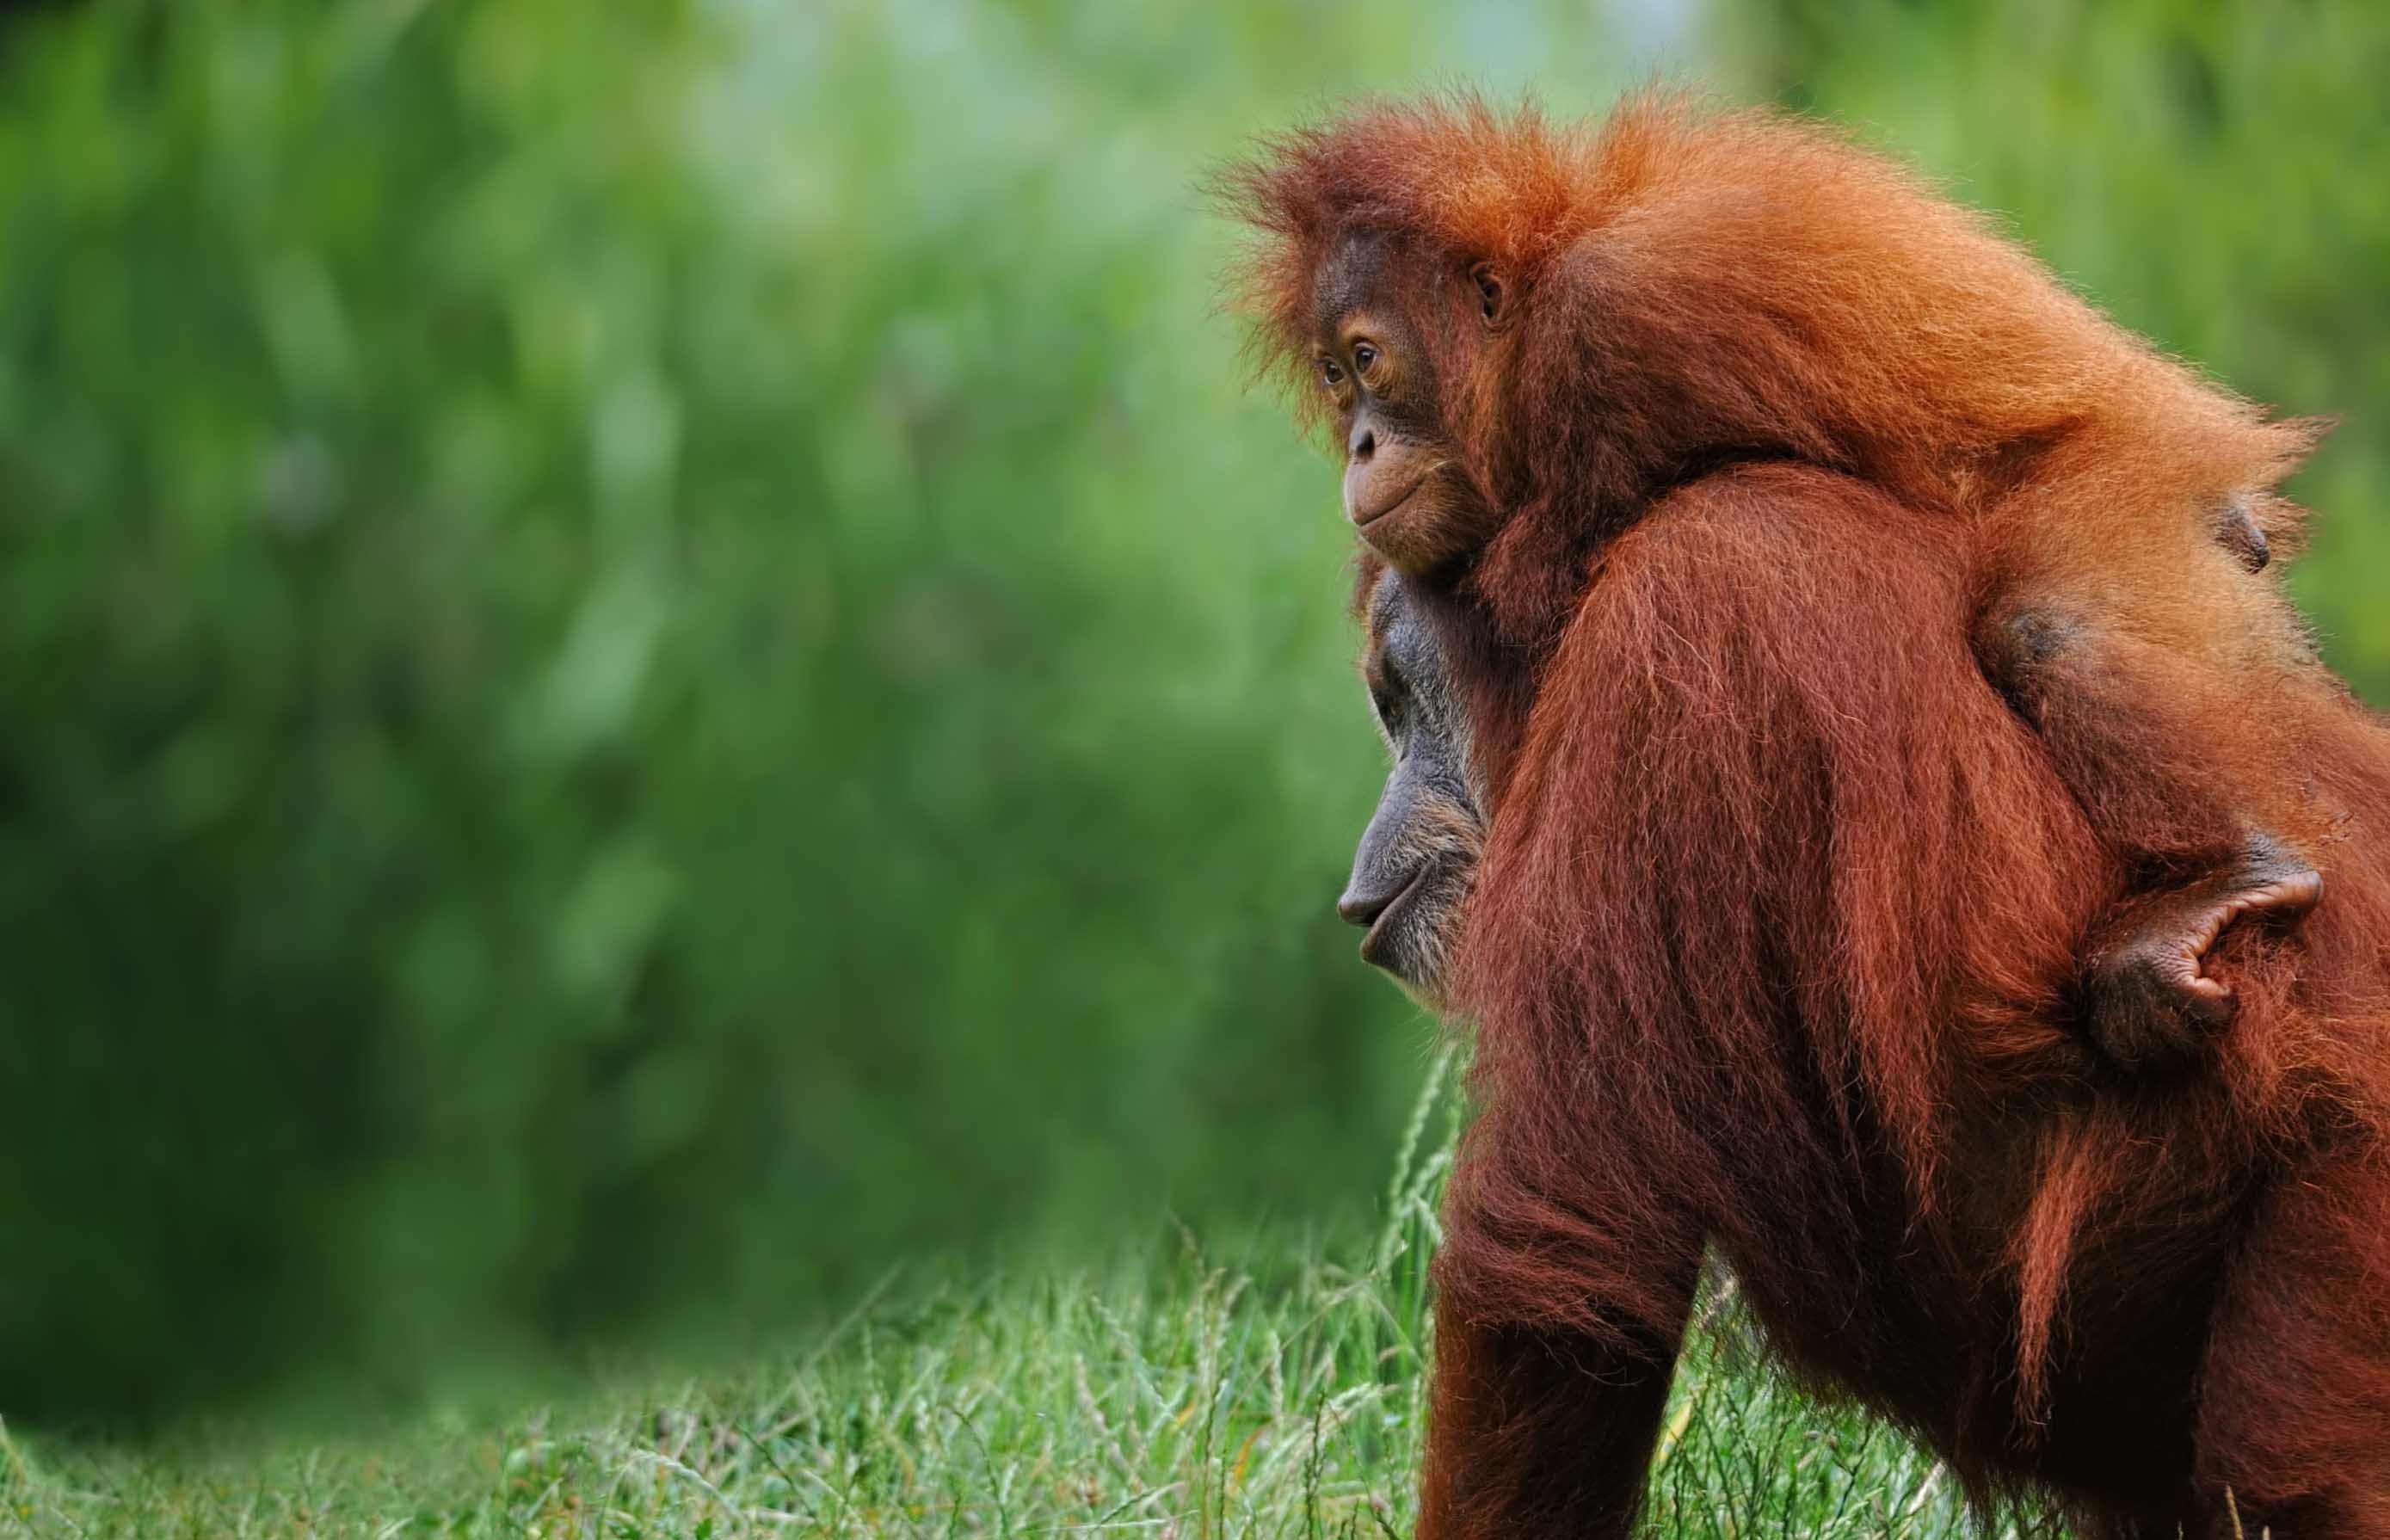 Adopt an orangutan in Borneo